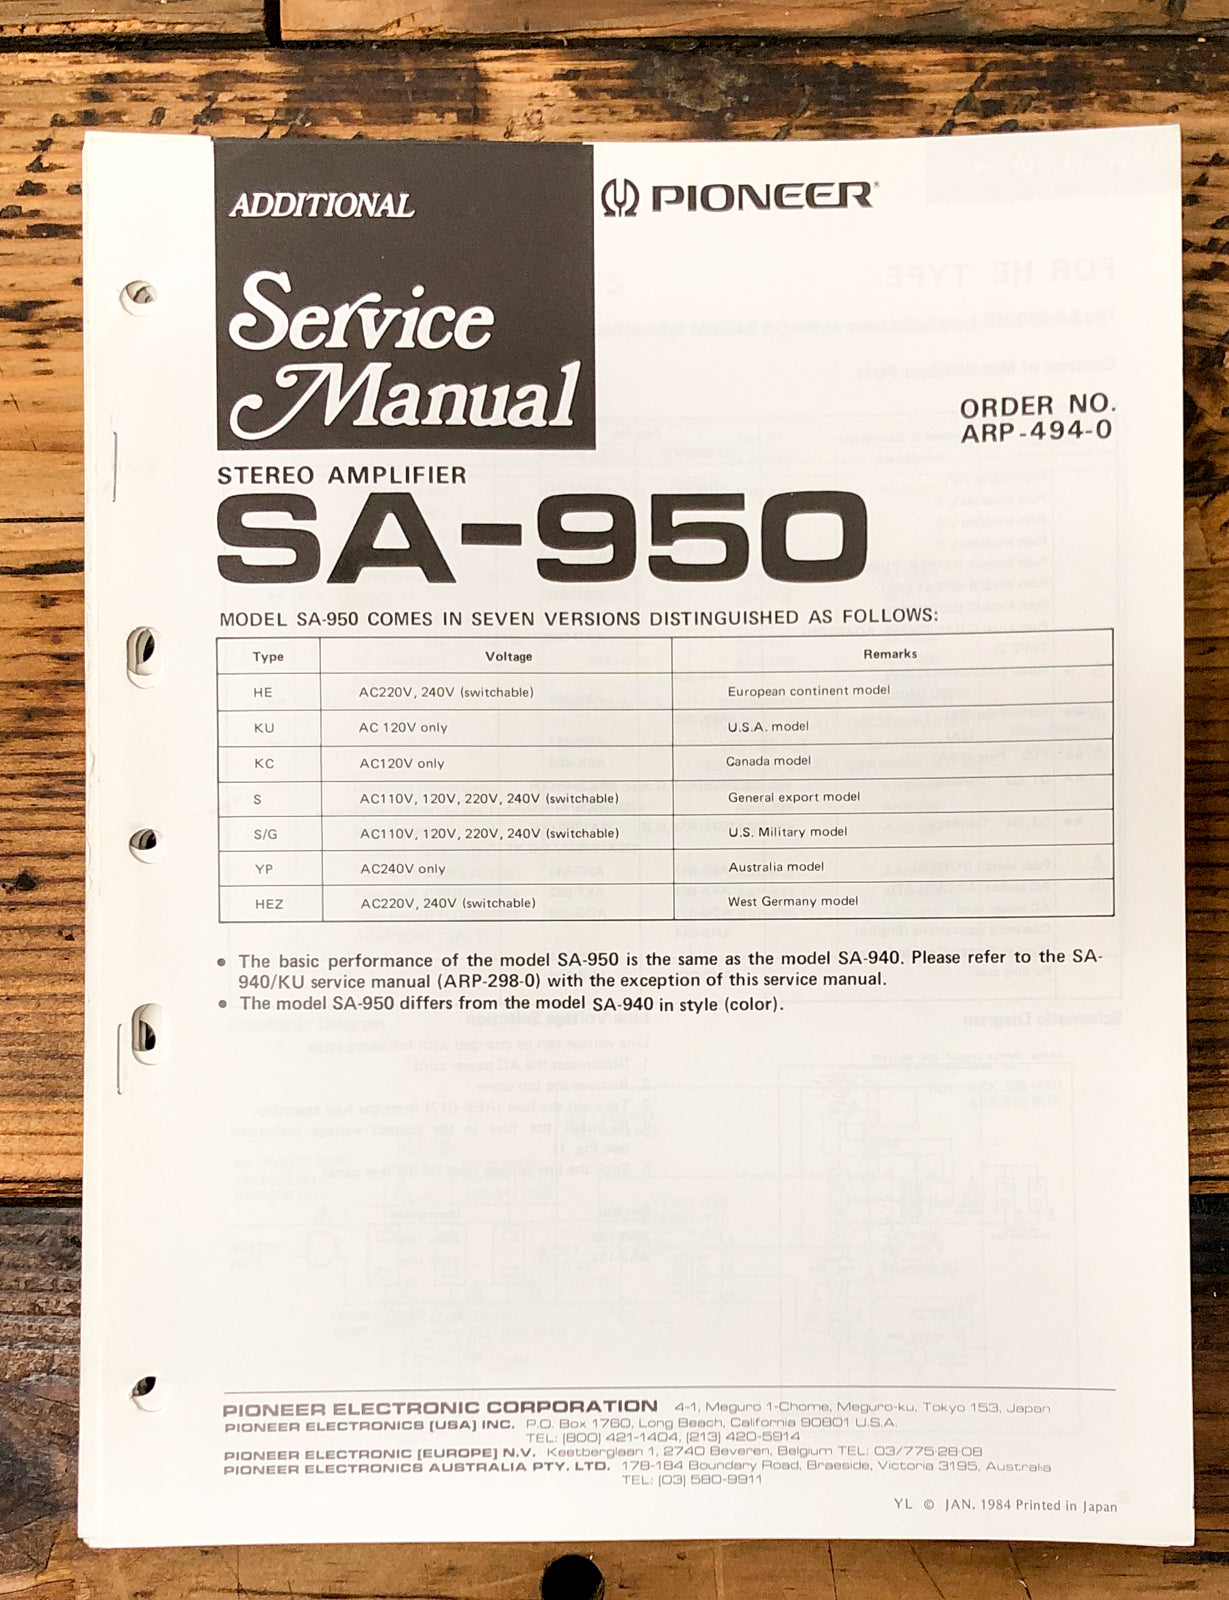 Pioneer SA-950 Amplifier Add. Service Manual *Original*